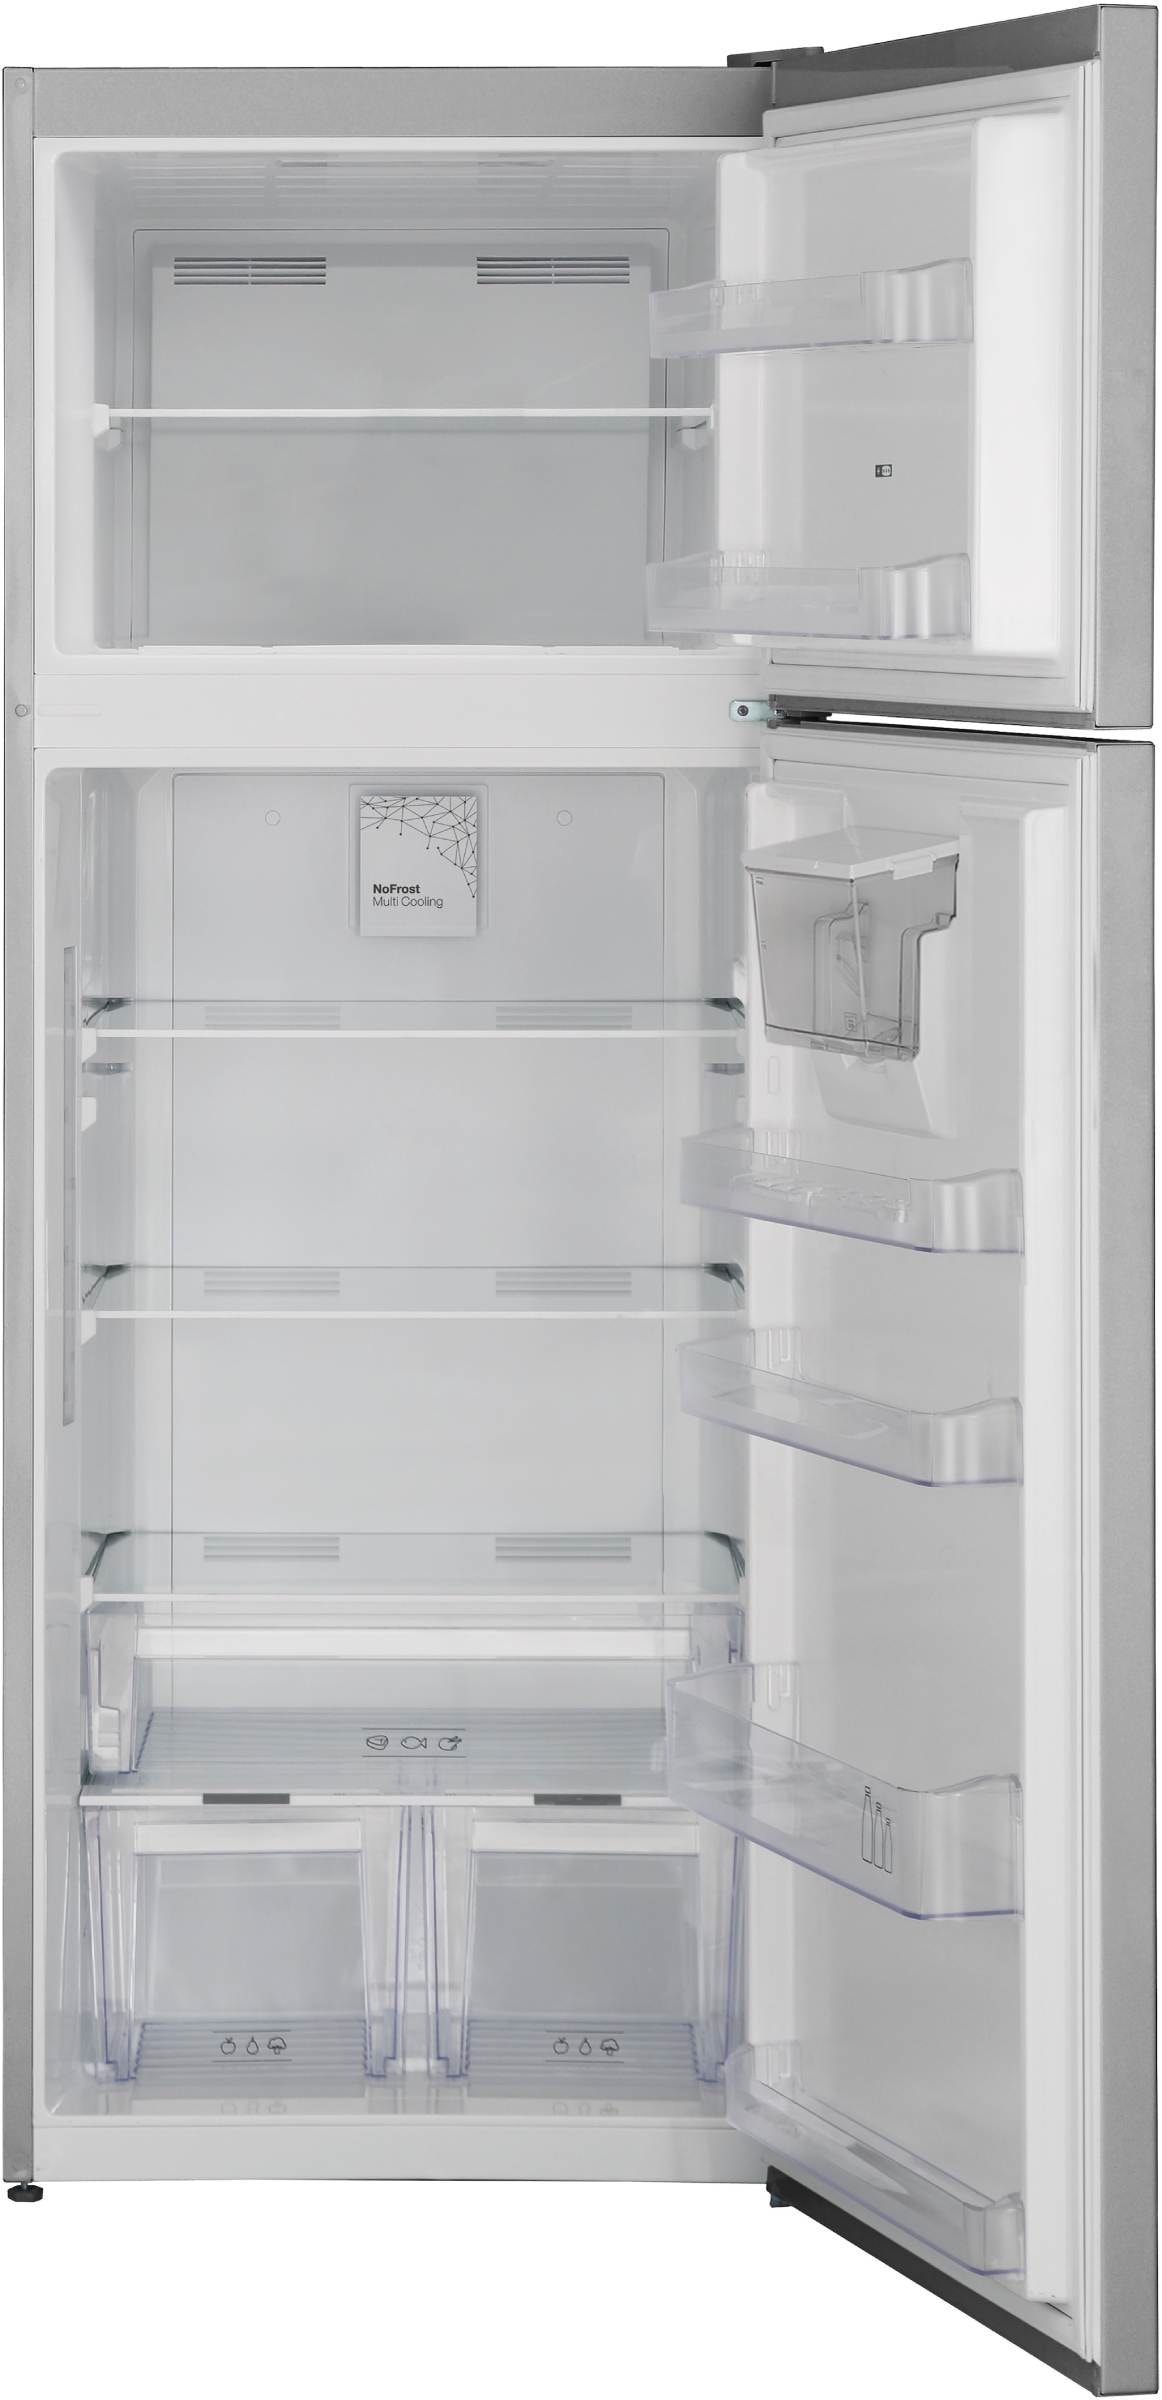 Réfrigérateur congélateur haut TELEFUNKEN R2P473NEXD Pas Cher 